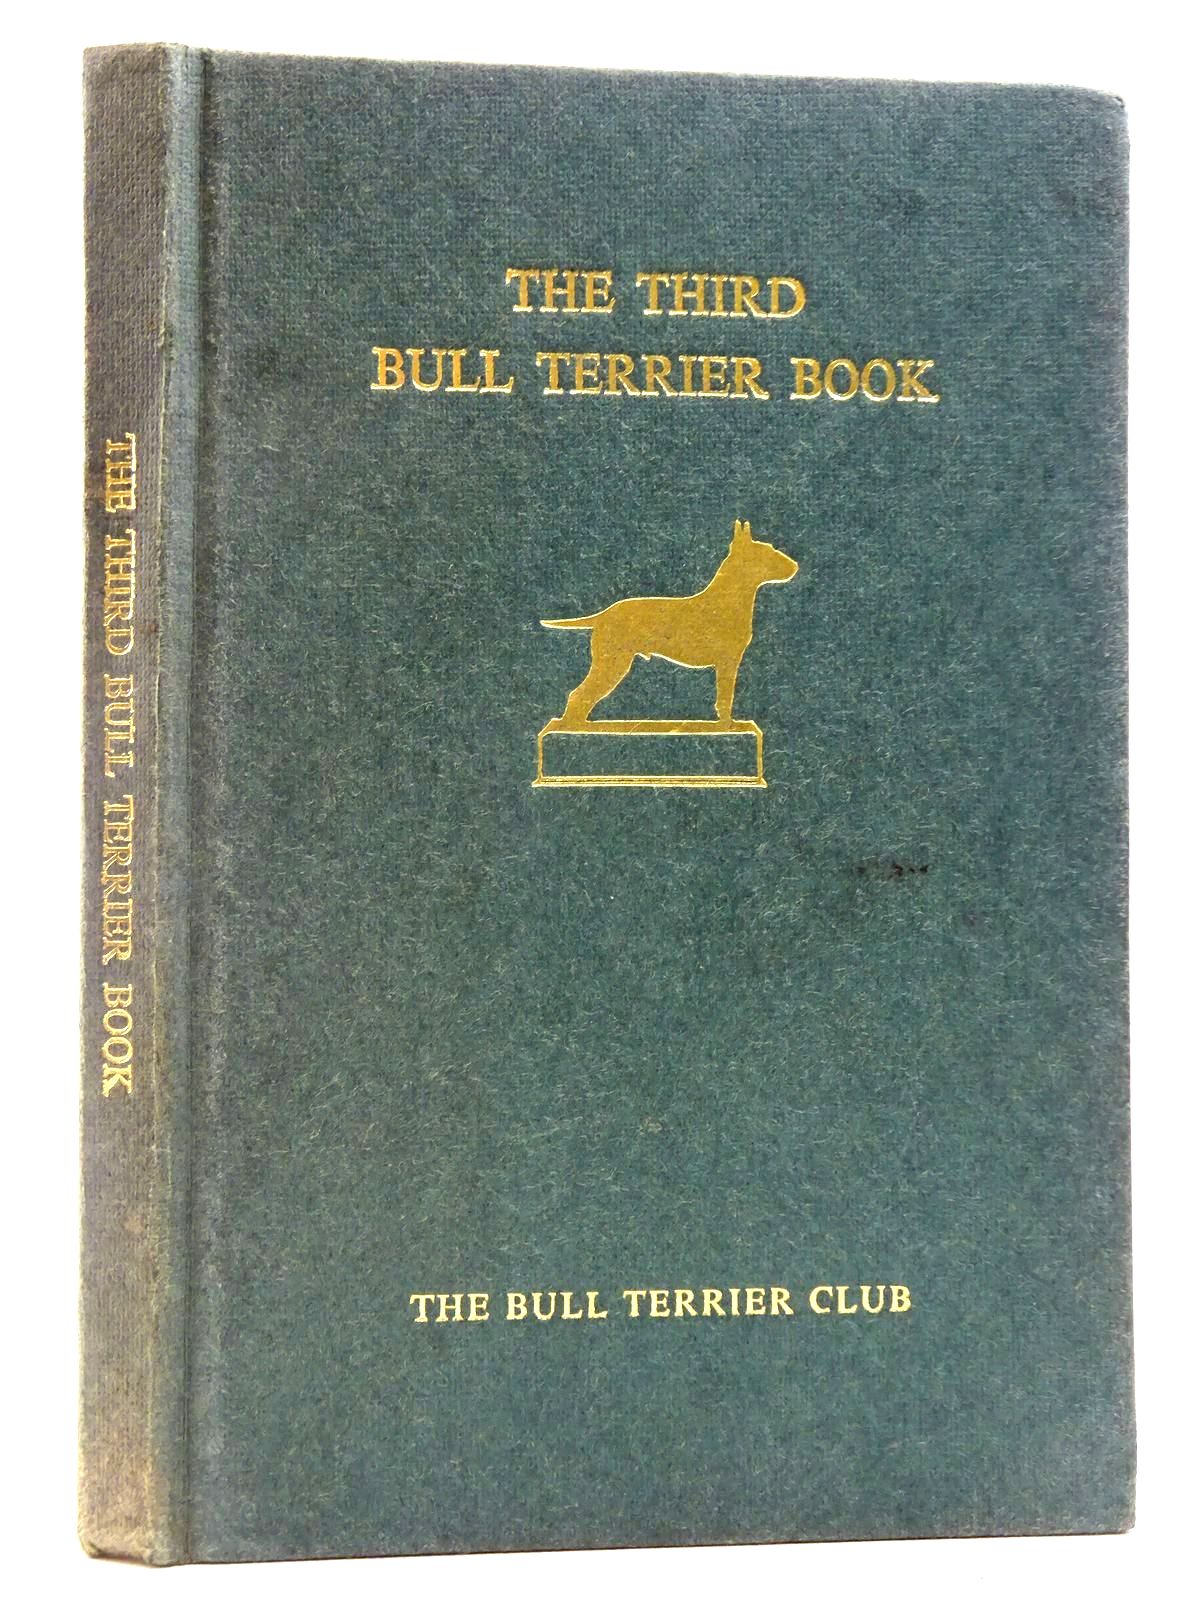 SWEETEN, MARGARET O. - The Third Bull Terrier Book